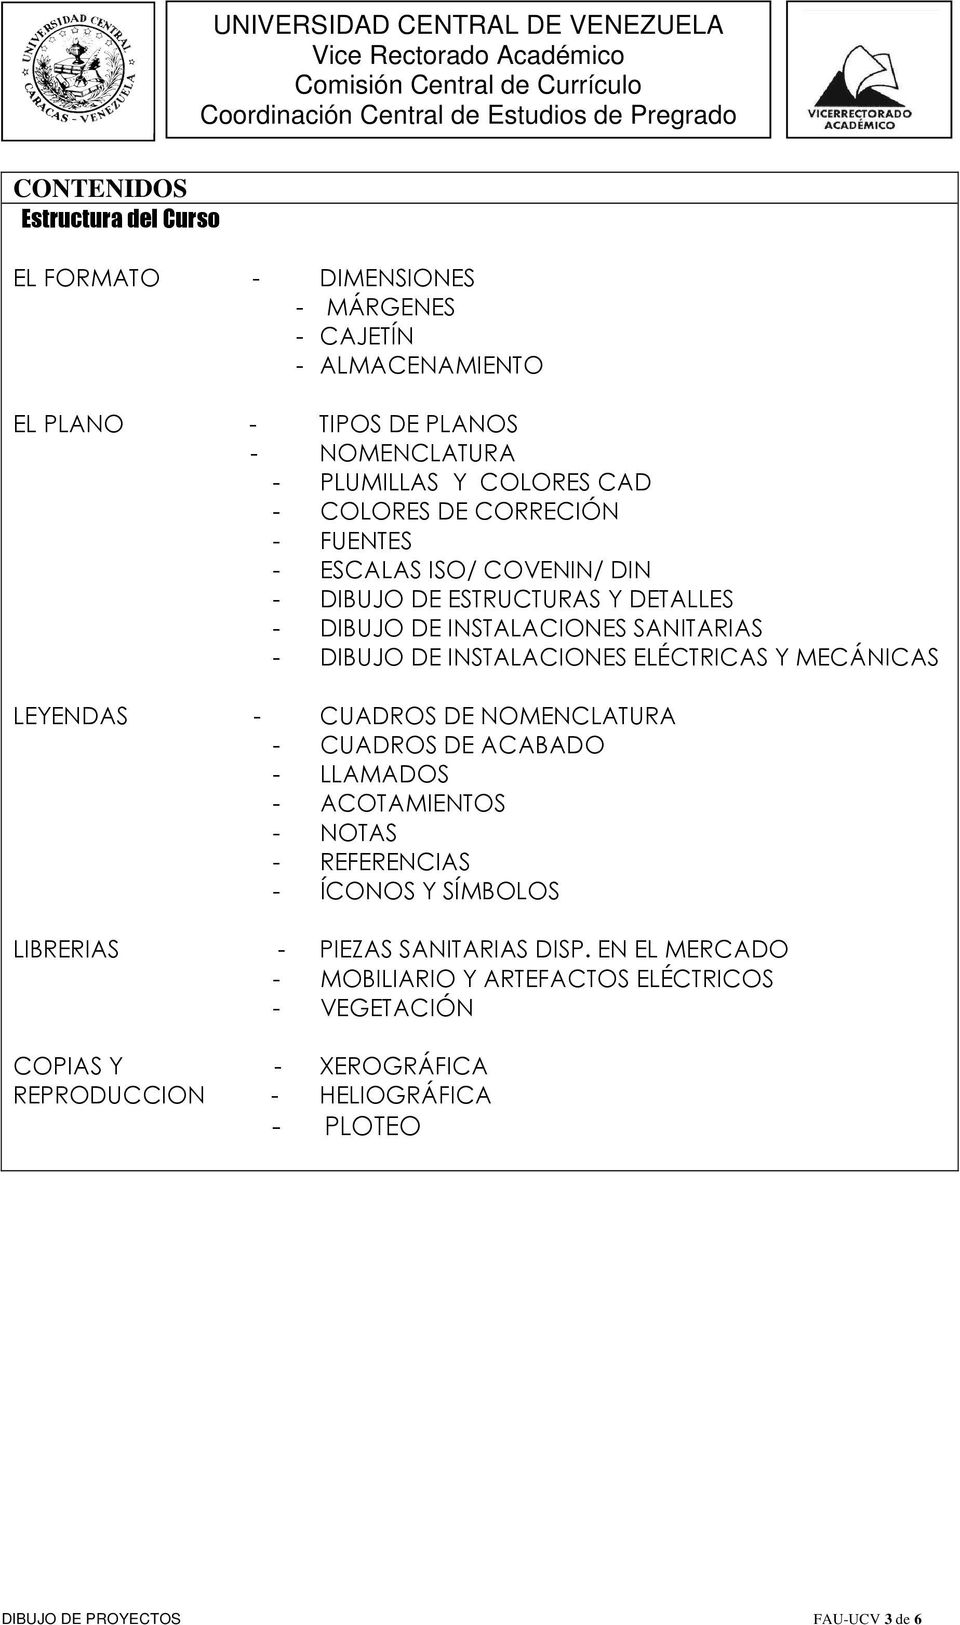 ELÉCTRICAS Y MECÁNICAS LEYENDAS - CUADROS DE NOMENCLATURA - CUADROS DE ACABADO - LLAMADOS - ACOTAMIENTOS - NOTAS - REFERENCIAS - ÍCONOS Y SÍMBOLOS LIBRERIAS COPIAS Y